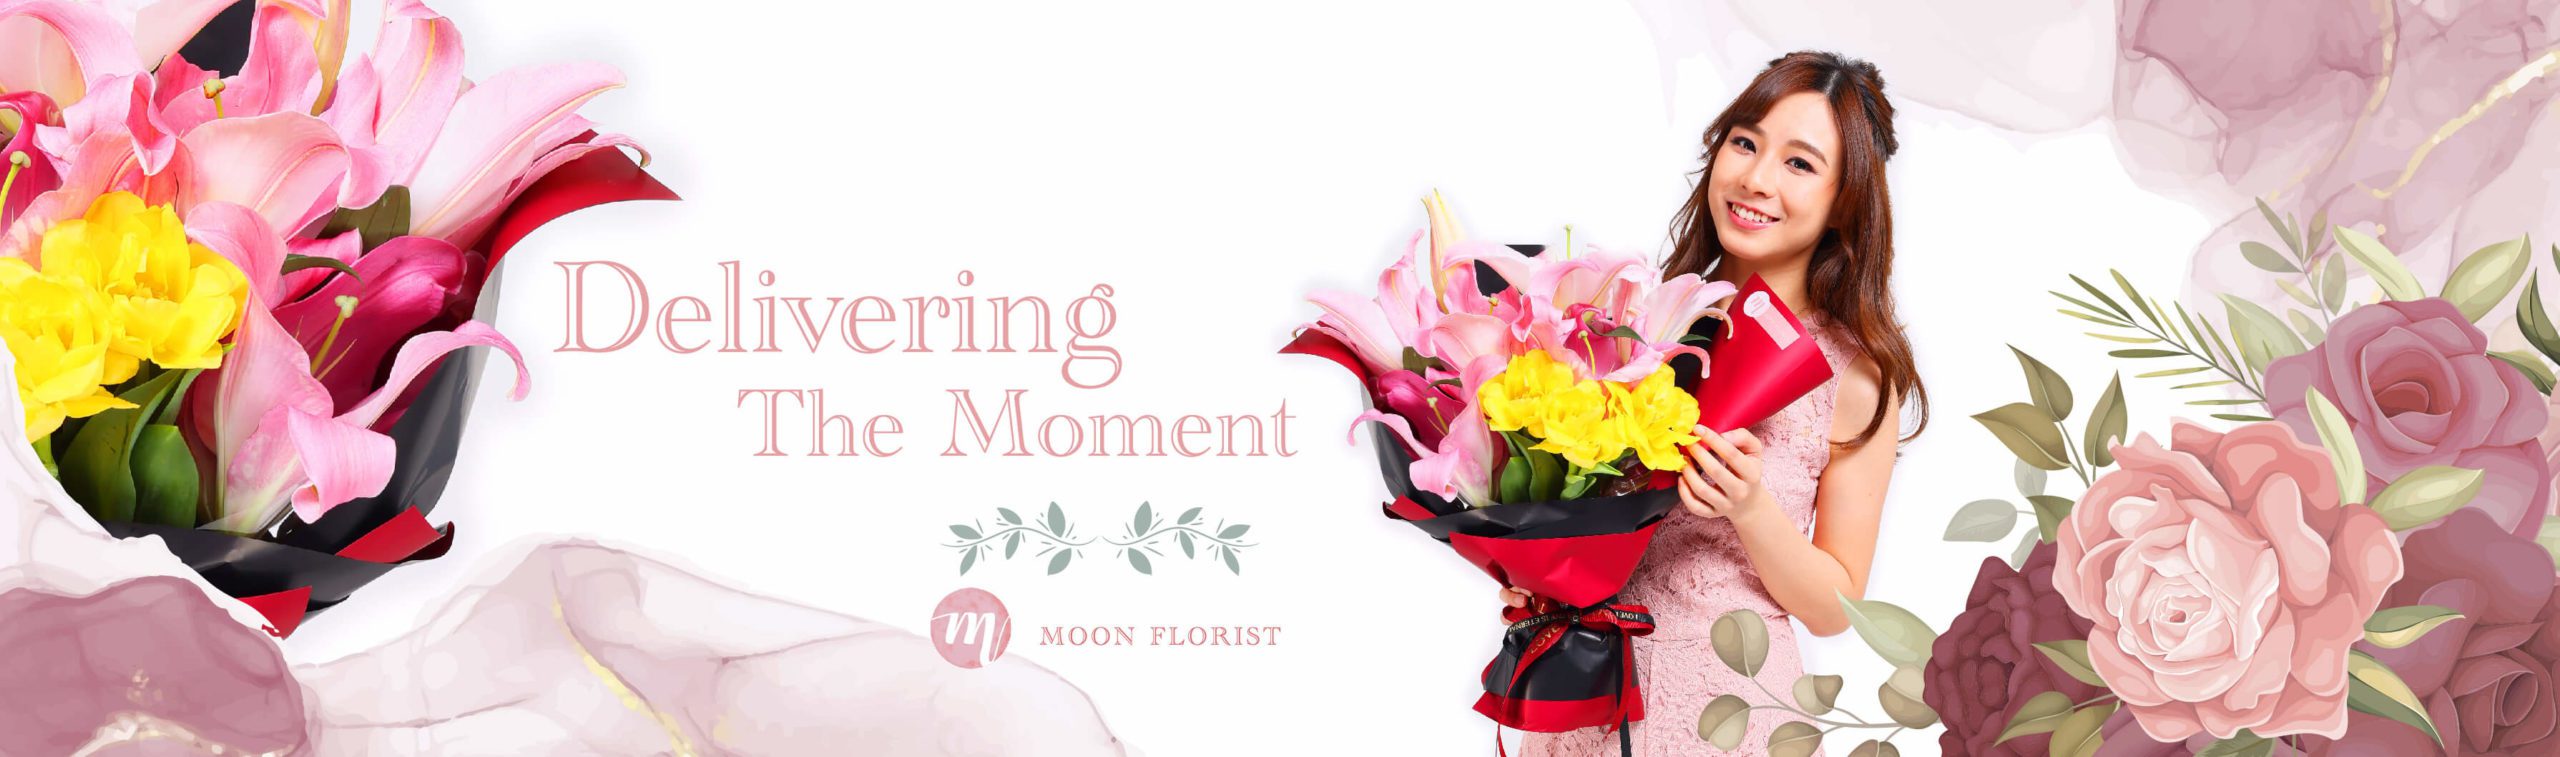 康乃馨花束, 康乃馨, Moon Florist 母親節康乃馨花束 -model banner